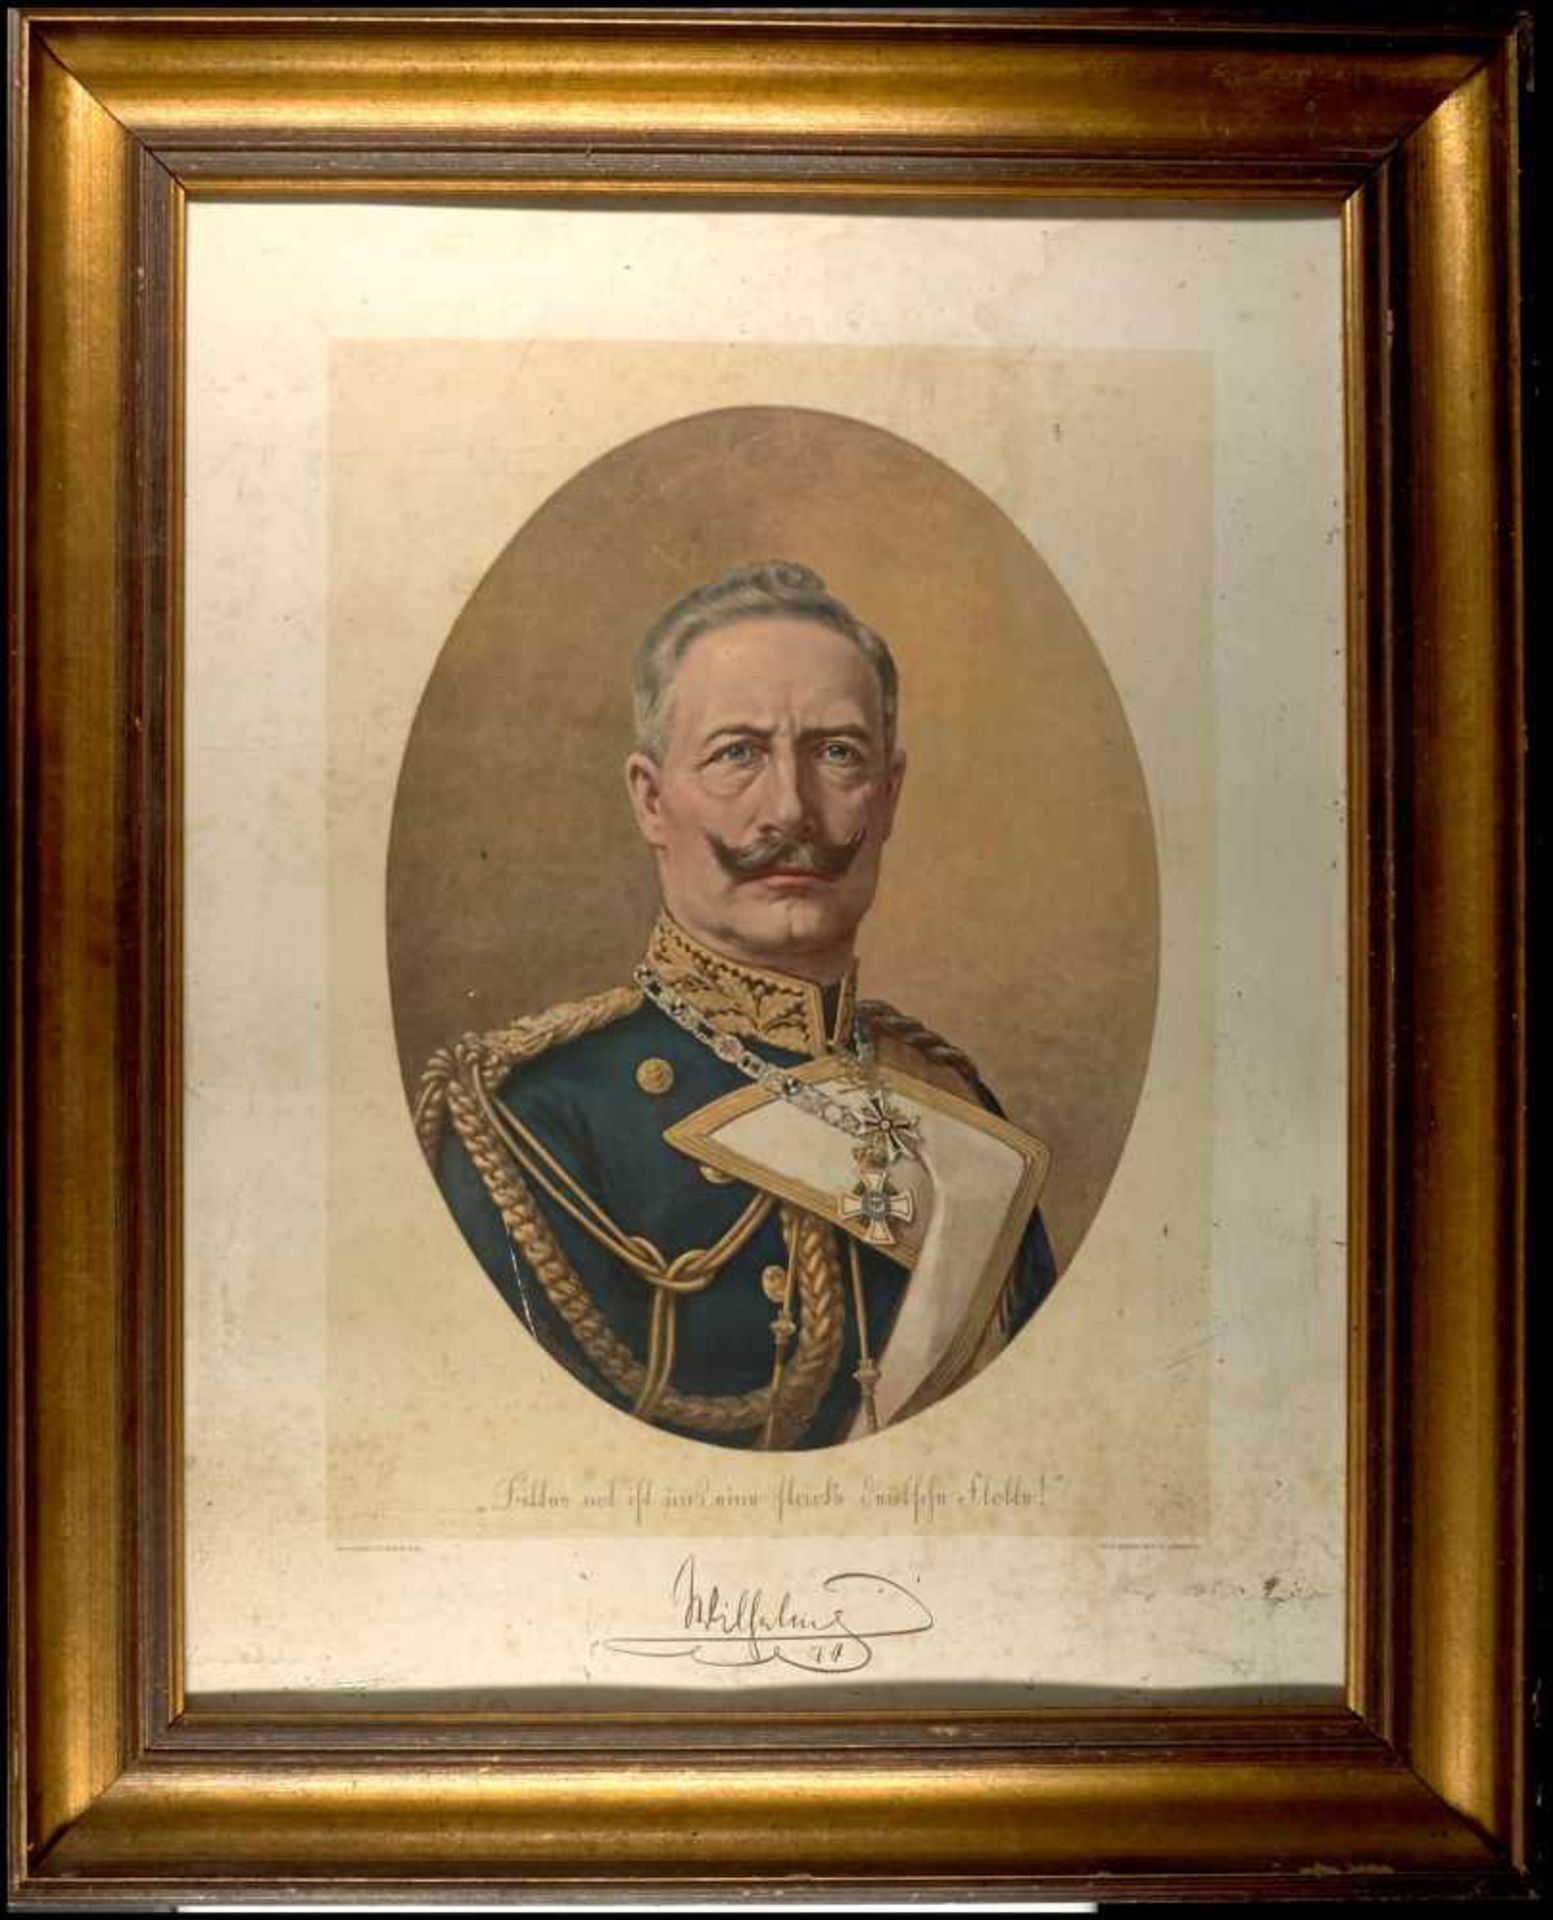 Varia Brustbild Wilhelm II. von Preußen in Uniform, ca. 1915-1916, Druck nach einem Bild von J.